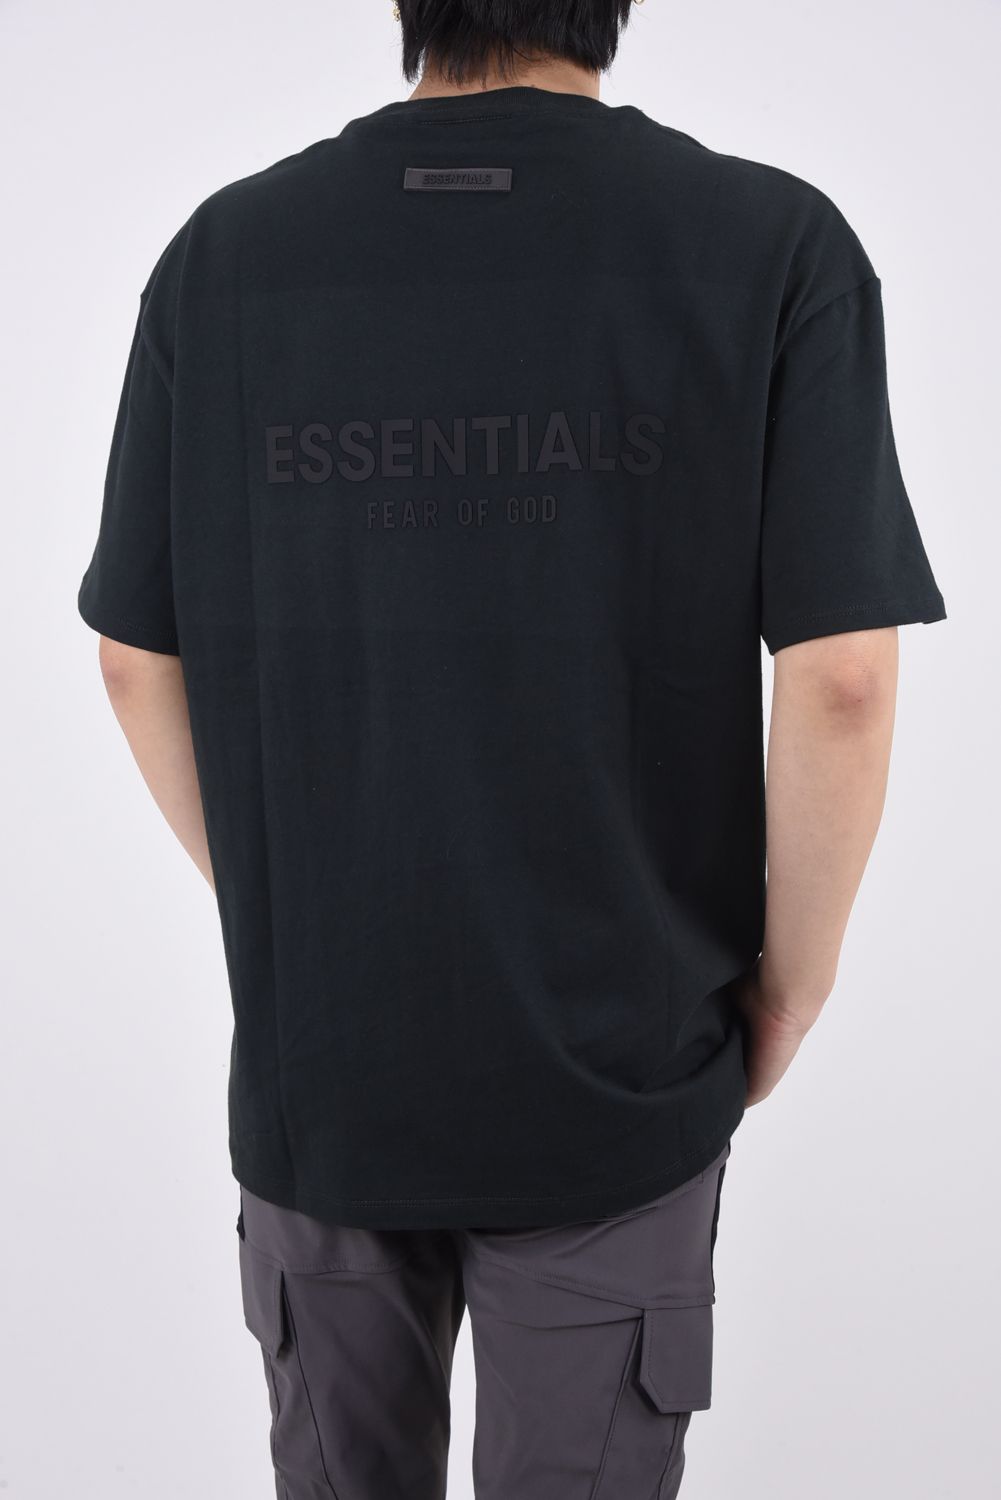 FOG エッセンシャルズ FG7Cロゴ 半袖 Tシャツ ブラック XL